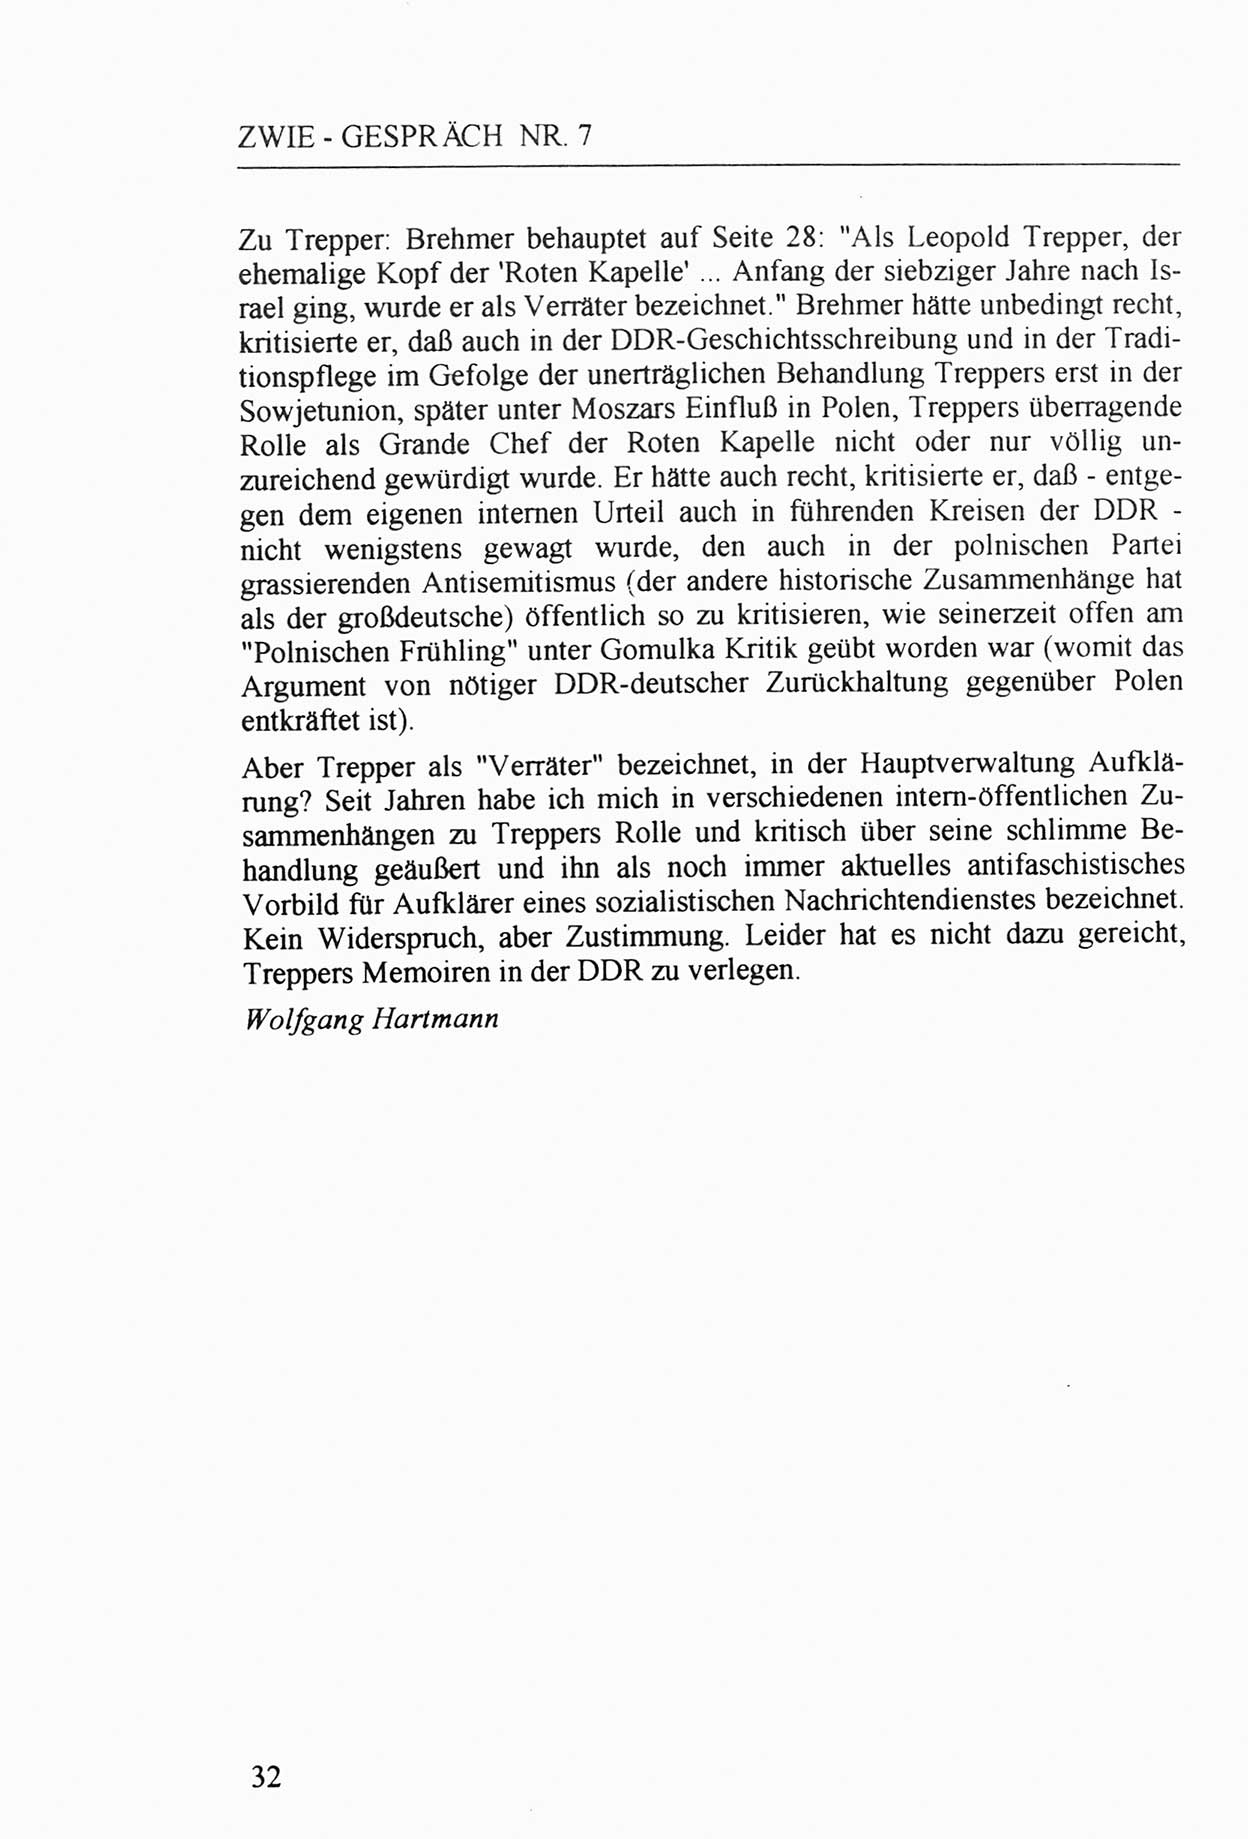 Zwie-Gespräch, Beiträge zur Aufarbeitung der Staatssicherheits-Vergangenheit [Deutsche Demokratische Republik (DDR)], Ausgabe Nr. 7, Berlin 1992, Seite 32 (Zwie-Gespr. Ausg. 7 1992, S. 32)